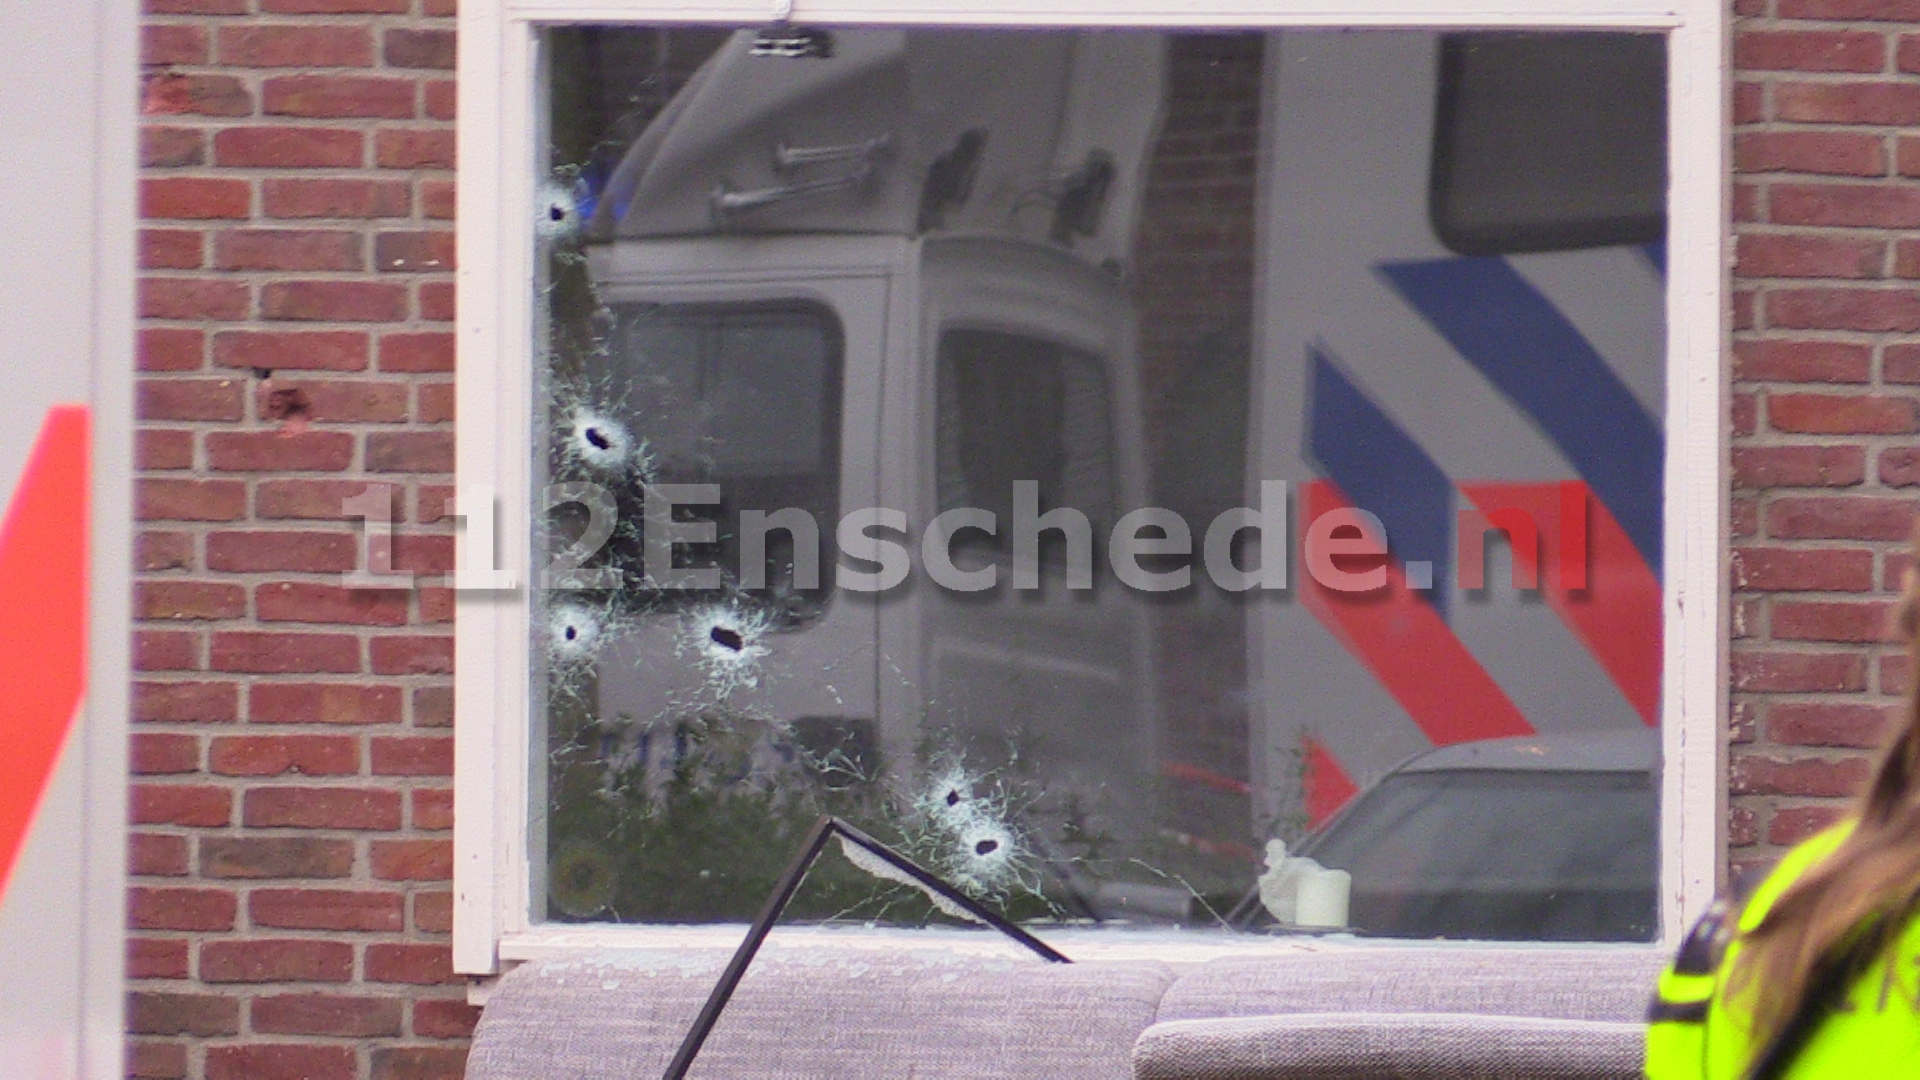 Schietpartijen en uitgebrande auto in Enschede